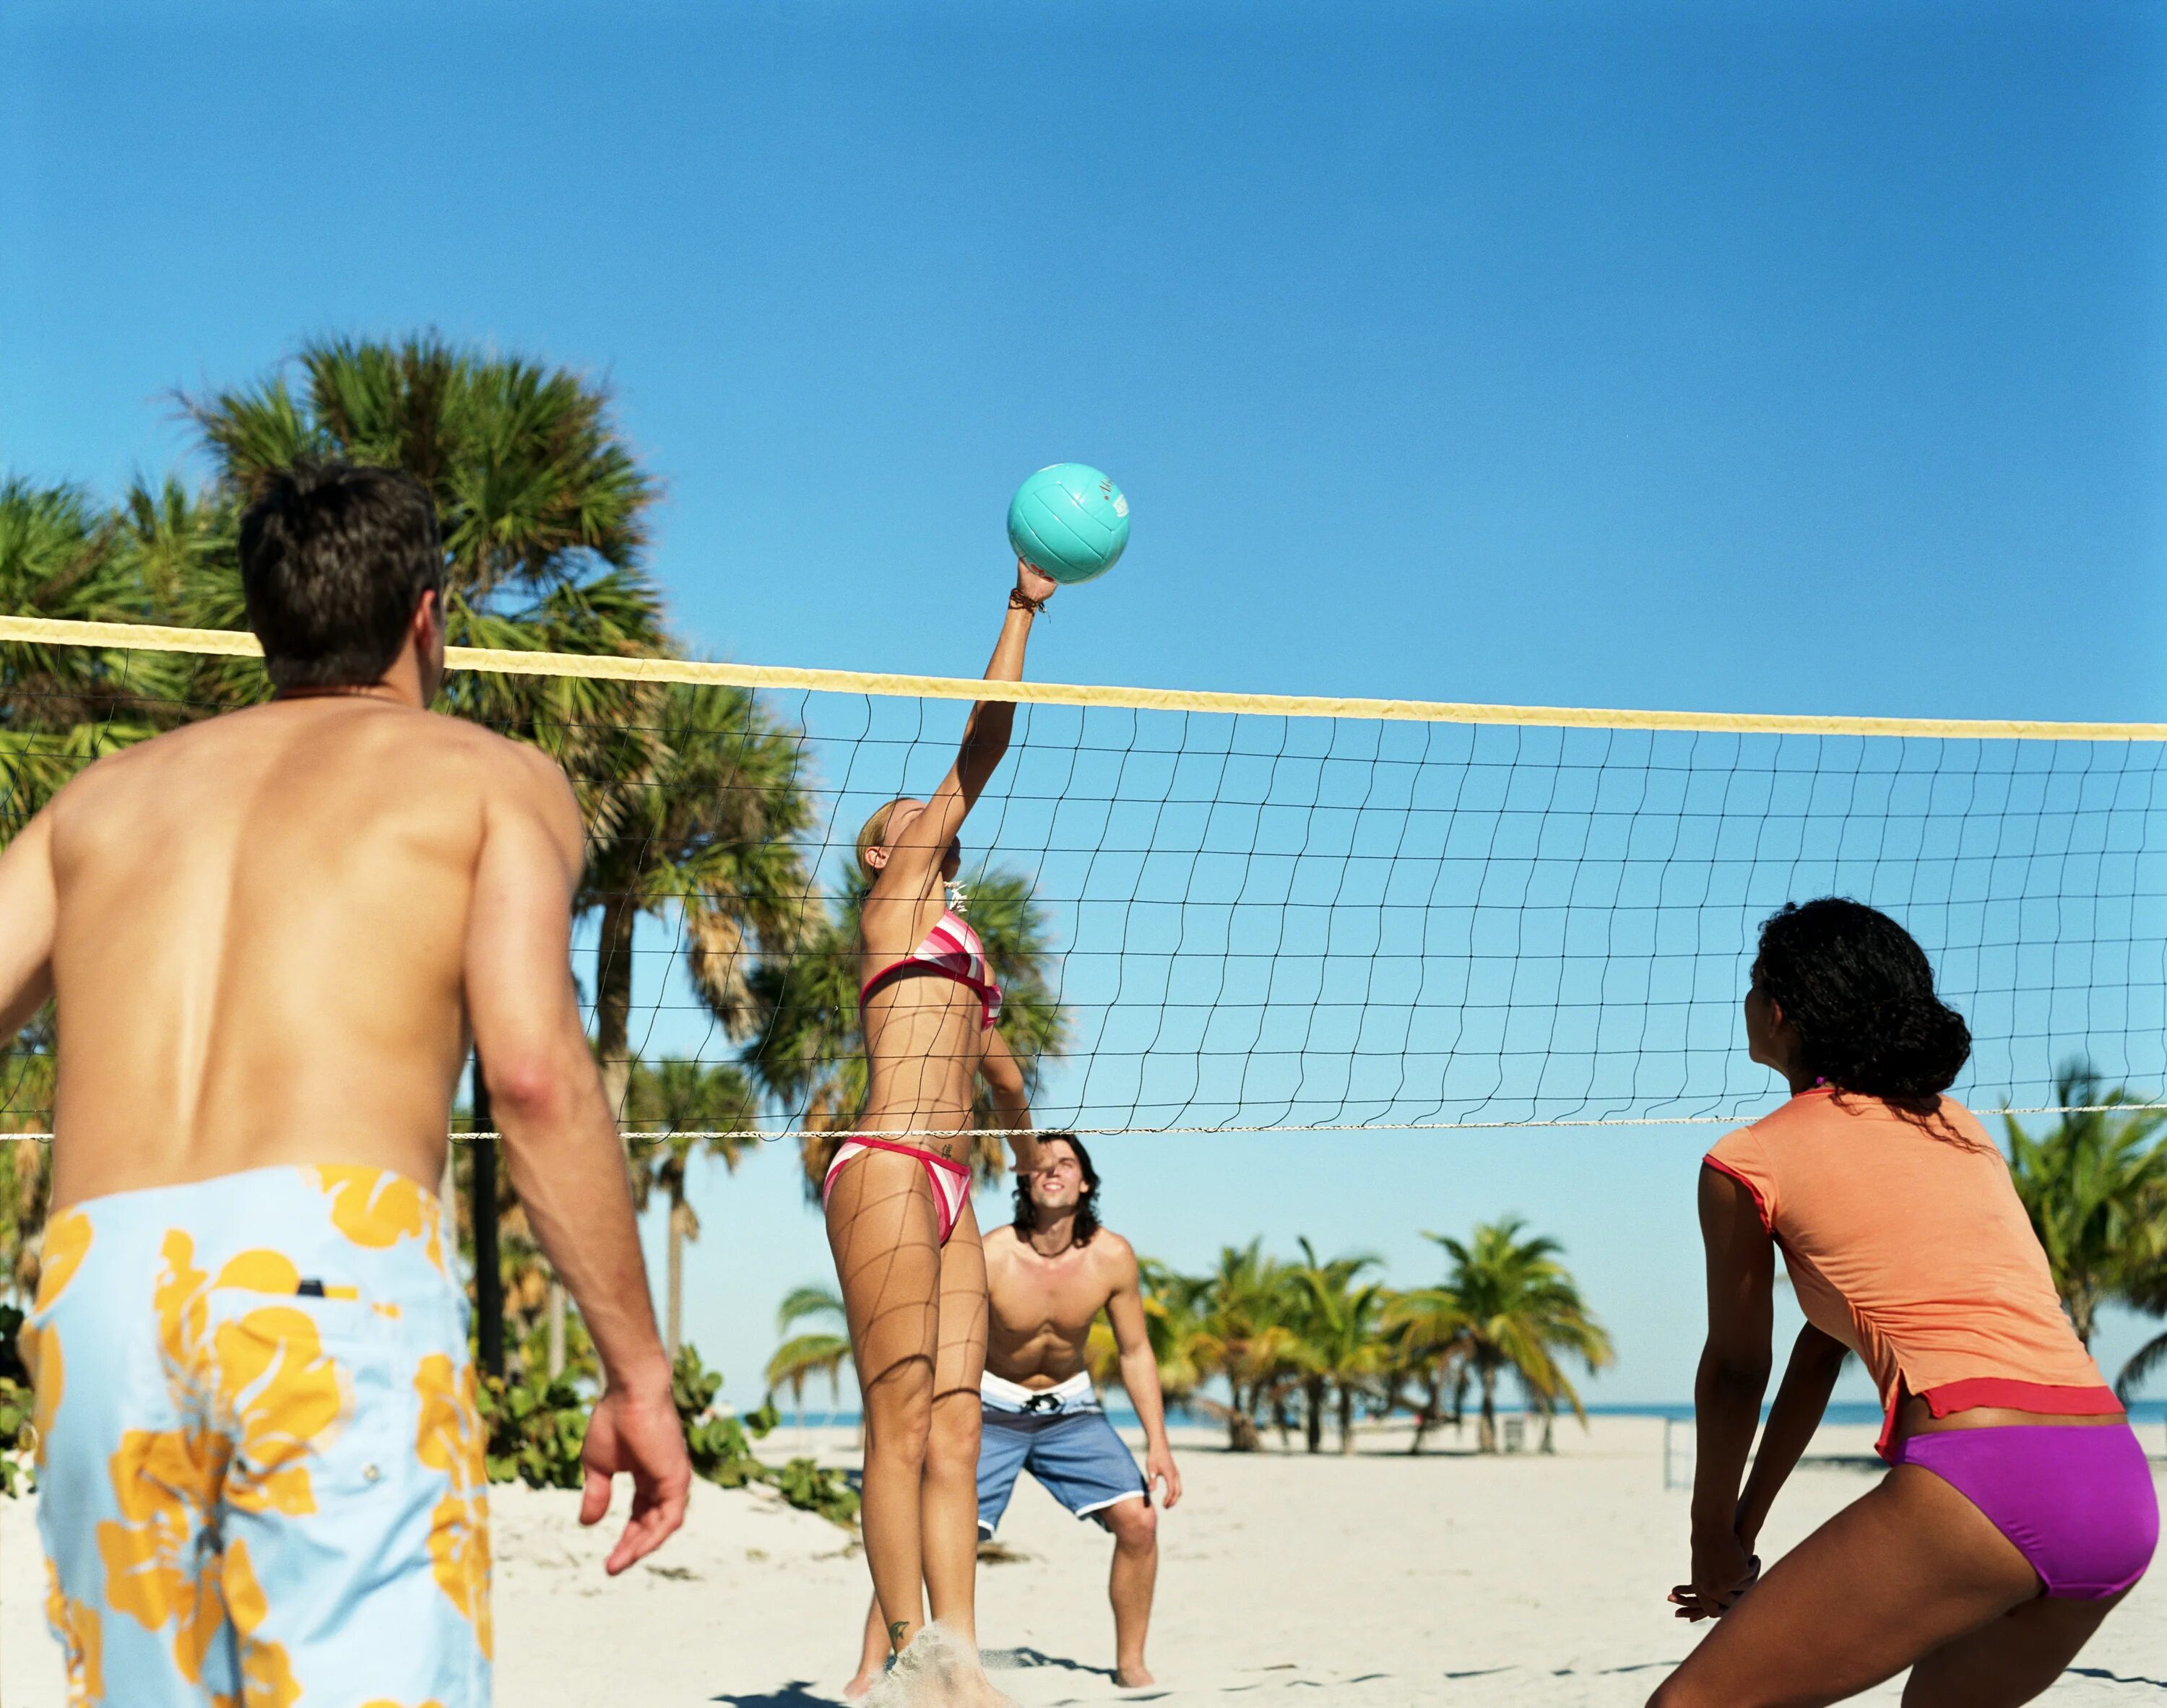 Summer sport. Волейбол на пляже. Игра в волейбол на пляже. Играют в волейбол на пляже. Люди играют в волейбол на пляже.